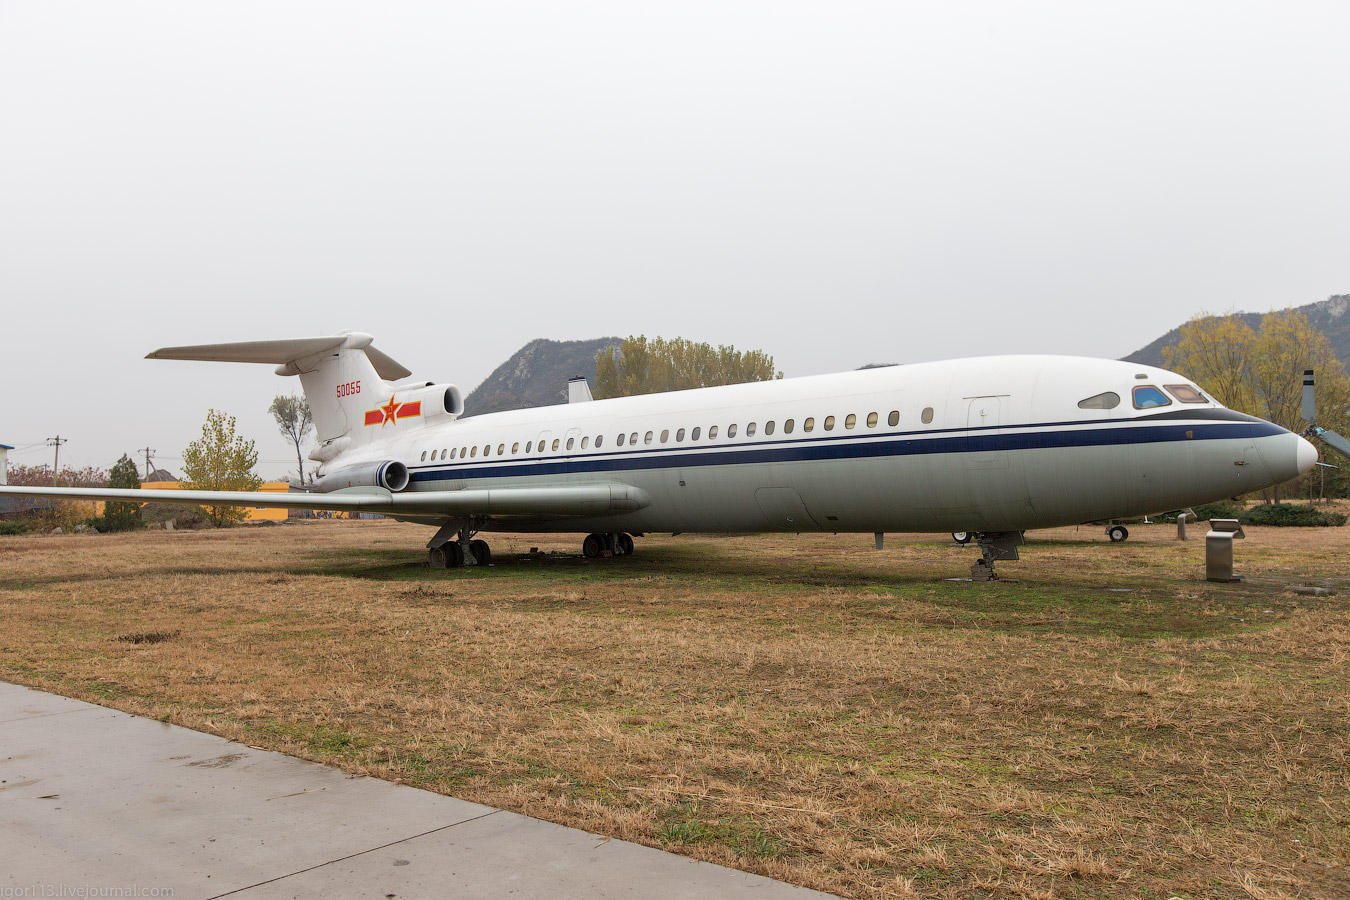  Музей ВВС Китая 2012 ч.15: Hawker Siddeley HS 121 Trident 